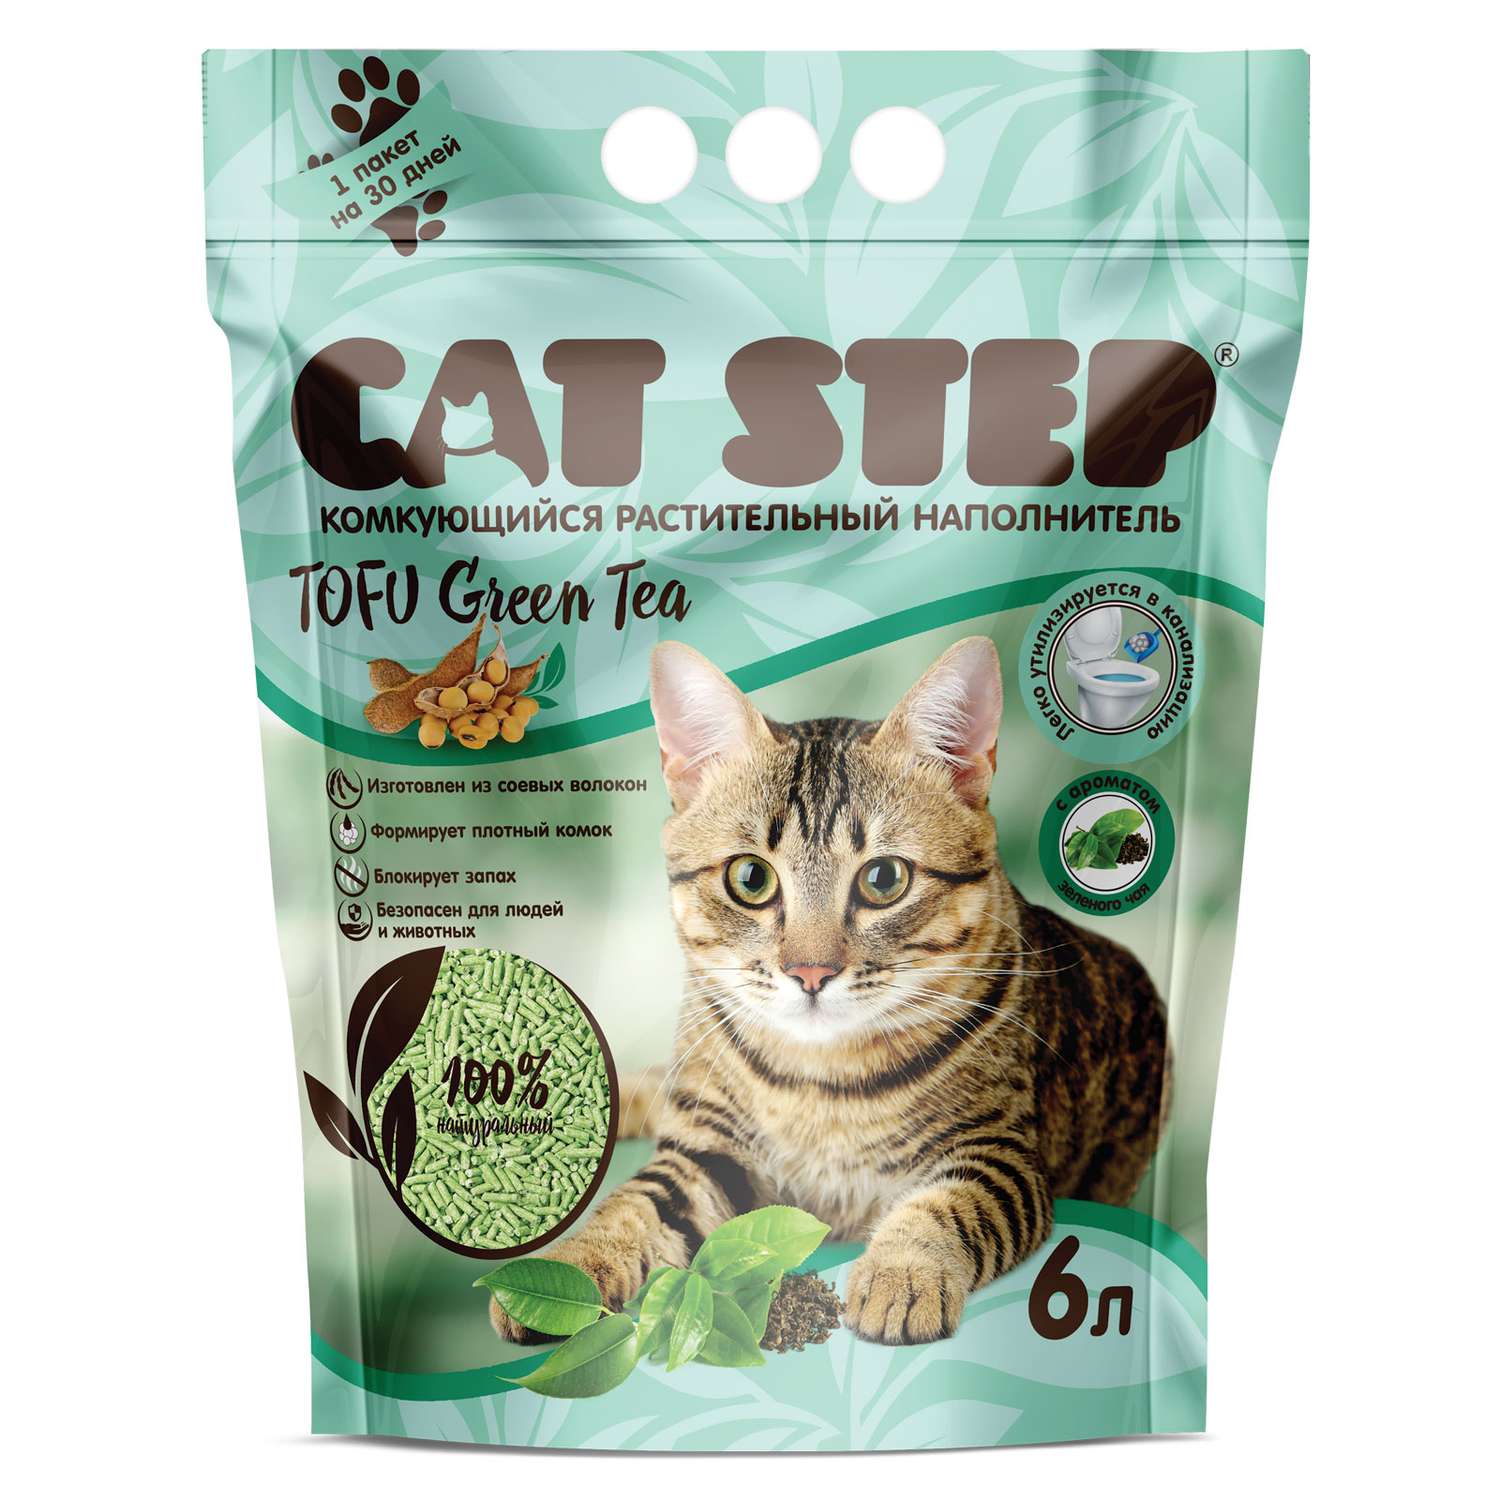 Наполнитель для кошек Cat Step Tofu Green Tea растительный комкующийся 6л - фото 1